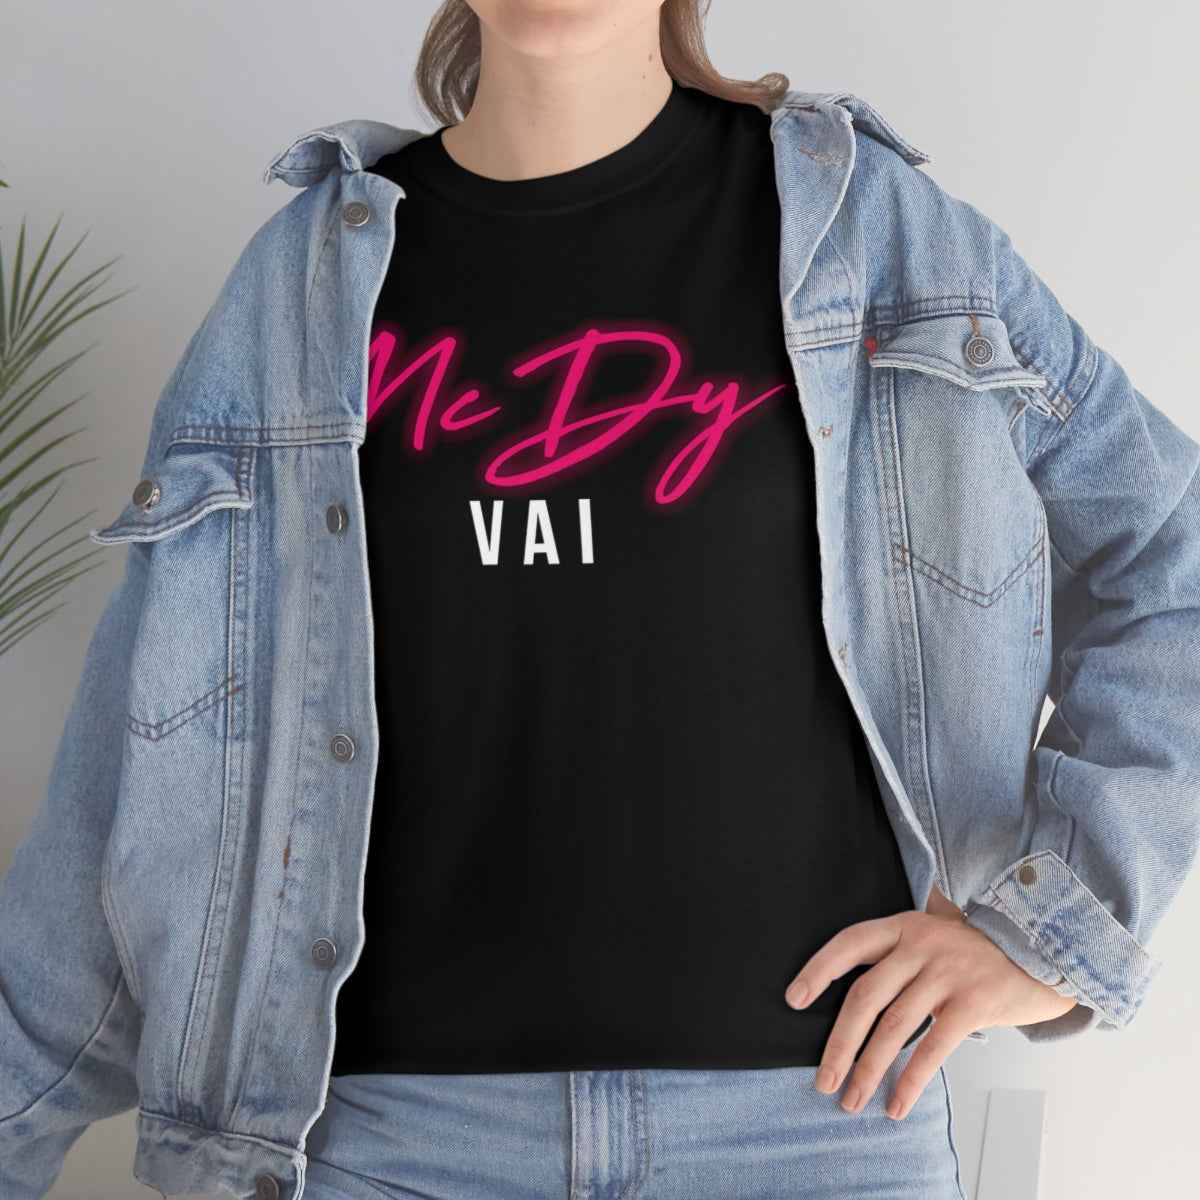 T-Shirt "MC DY - Vai"